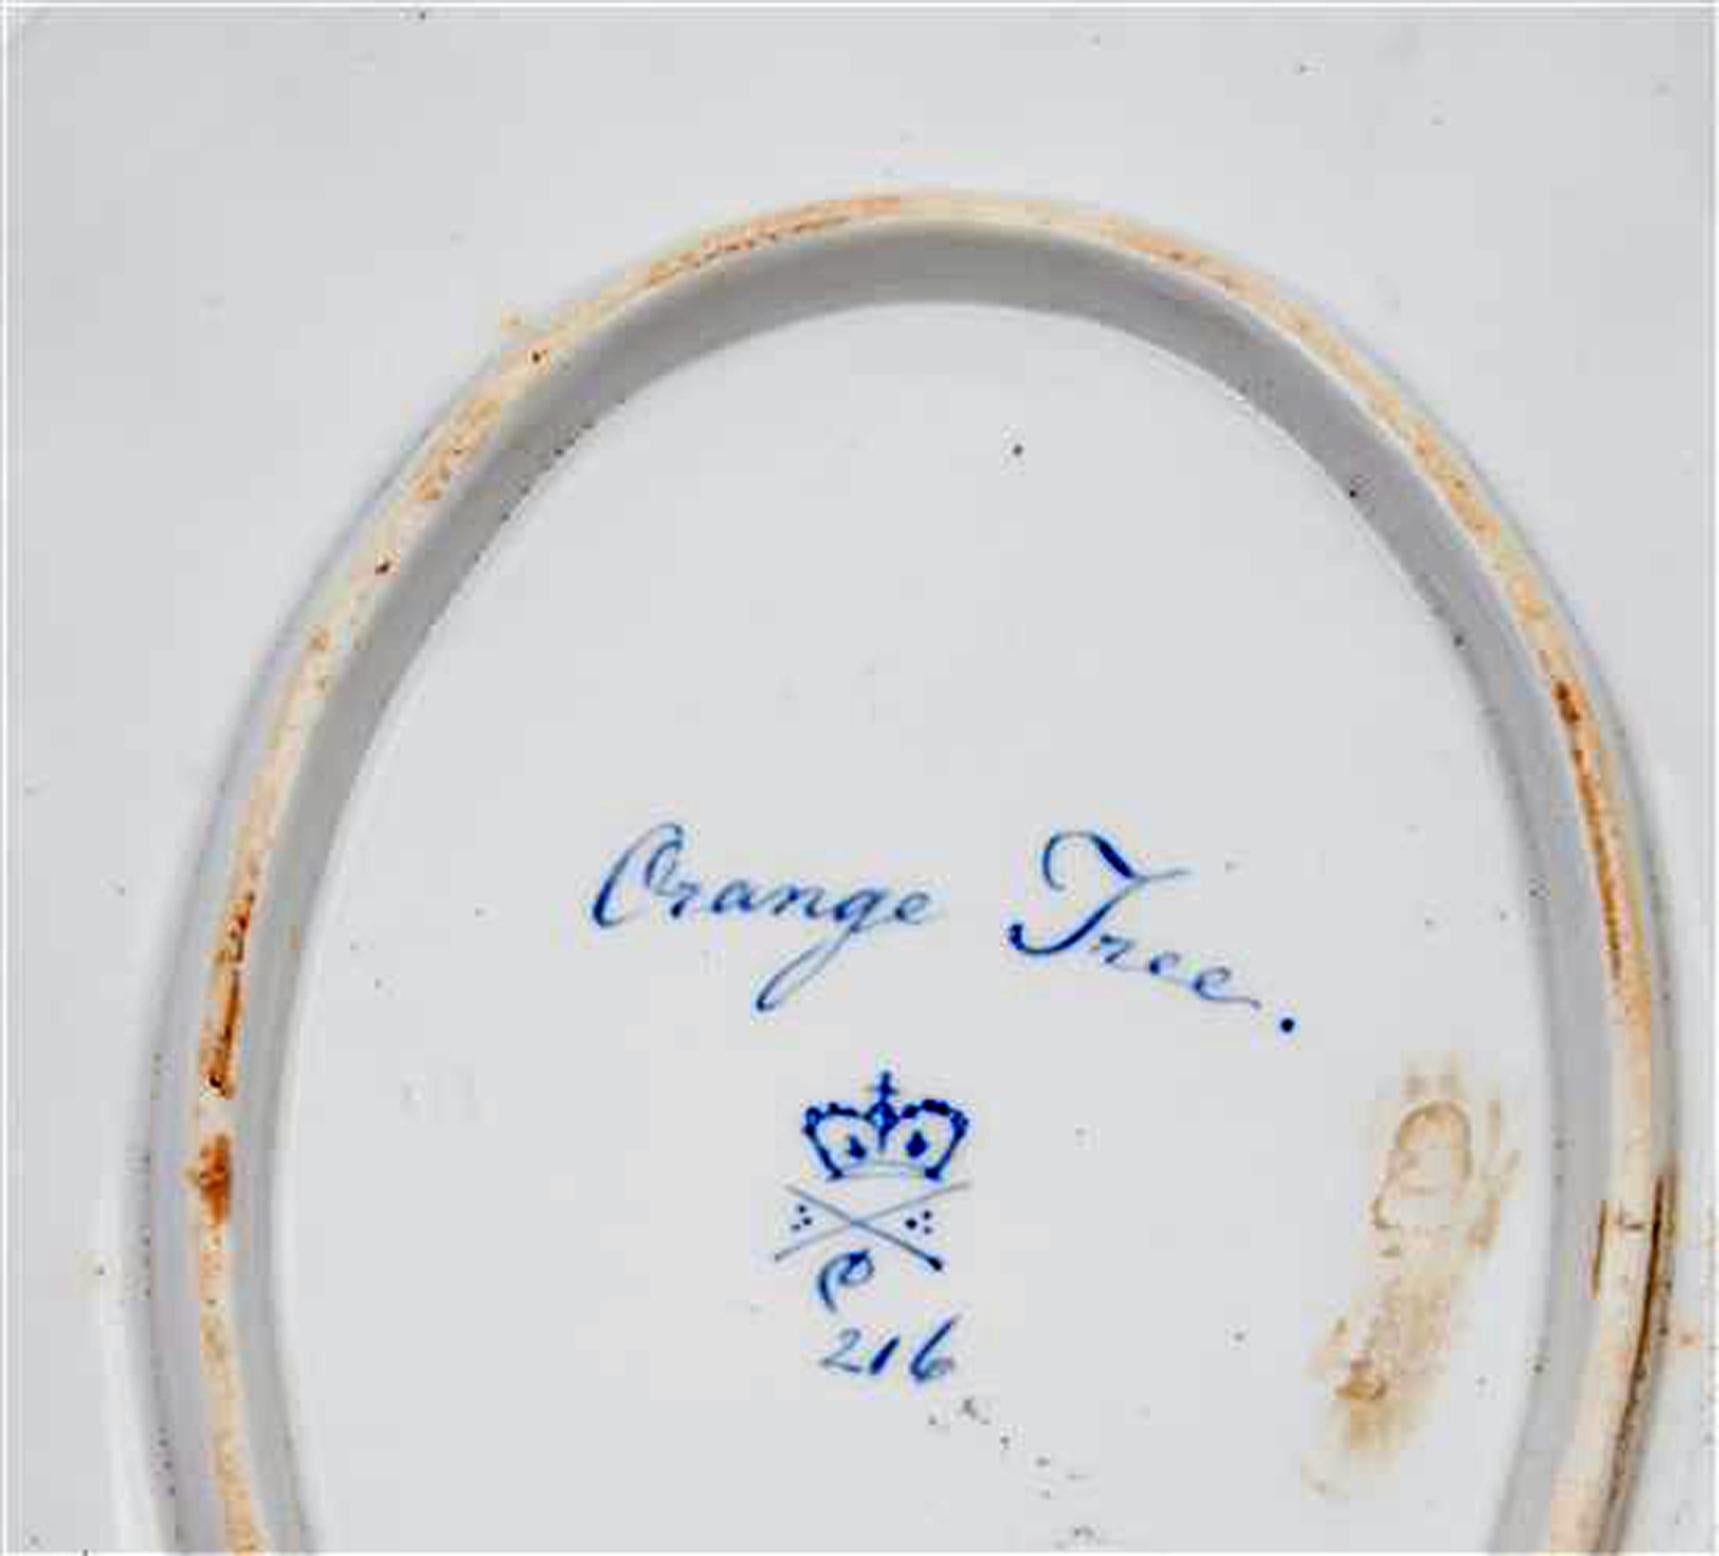 Plat botanique en porcelaine de Derby à fond jaune, 
Patron #216,
vers 1795

Le plat ovale en porcelaine de Derby présente une bordure à fond jaune avec un puits central peint d'un oranger et de feuilles dans une bordure dorée.

Nommé au